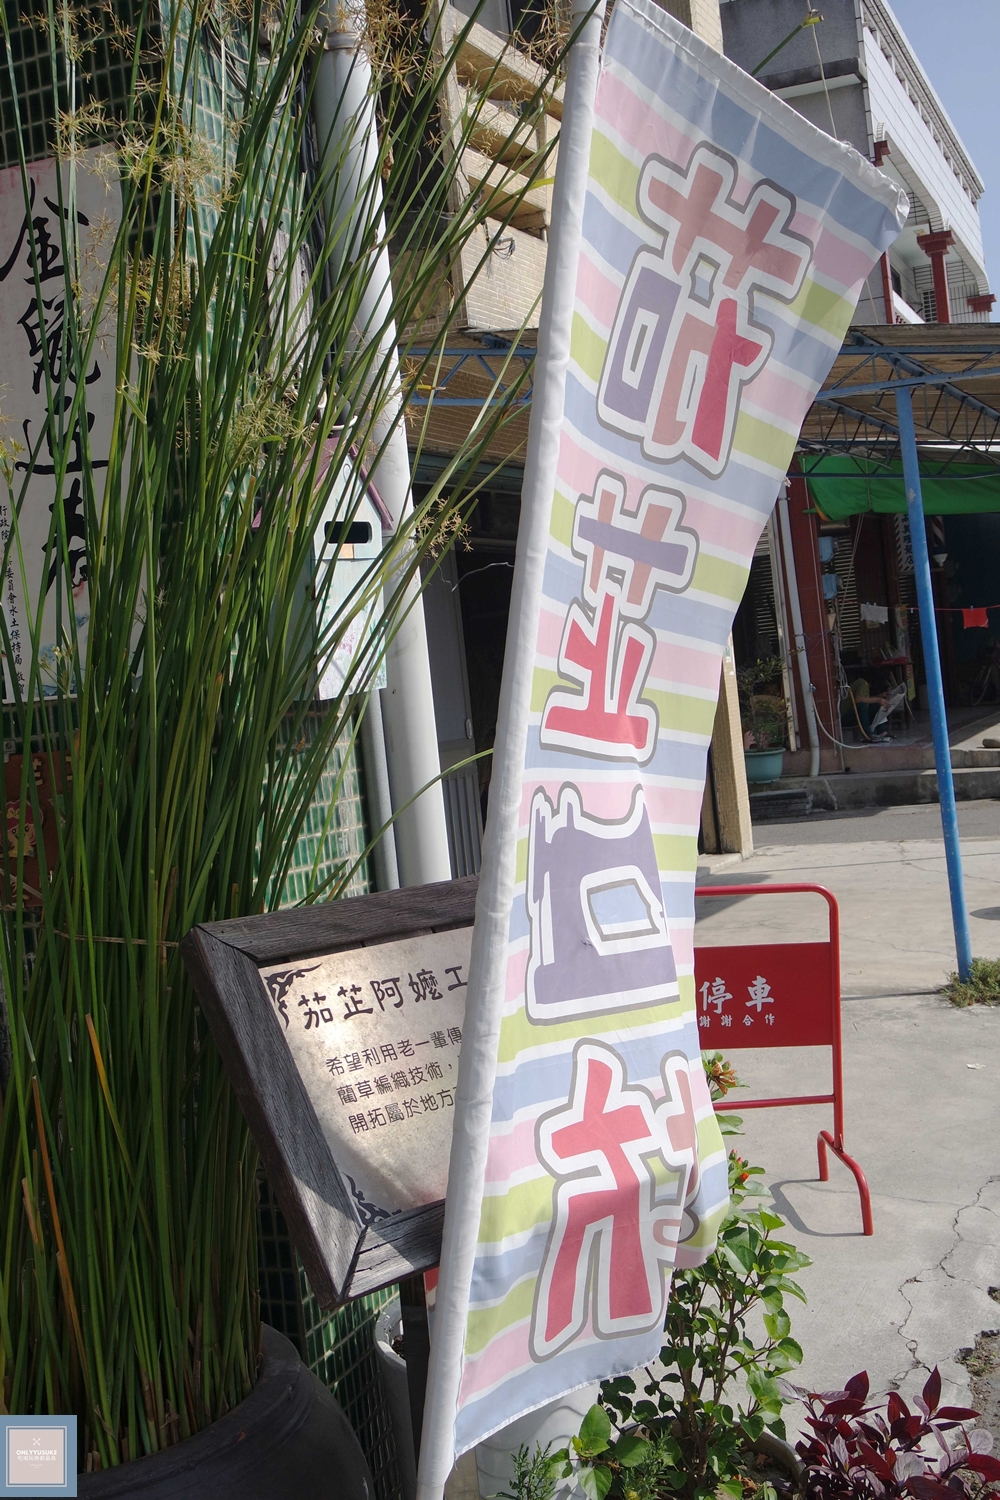 國內旅遊台南後壁區【無米樂菁寮老街】偶像劇俗女養成記拍攝景點,很有復古感的嫁妝街